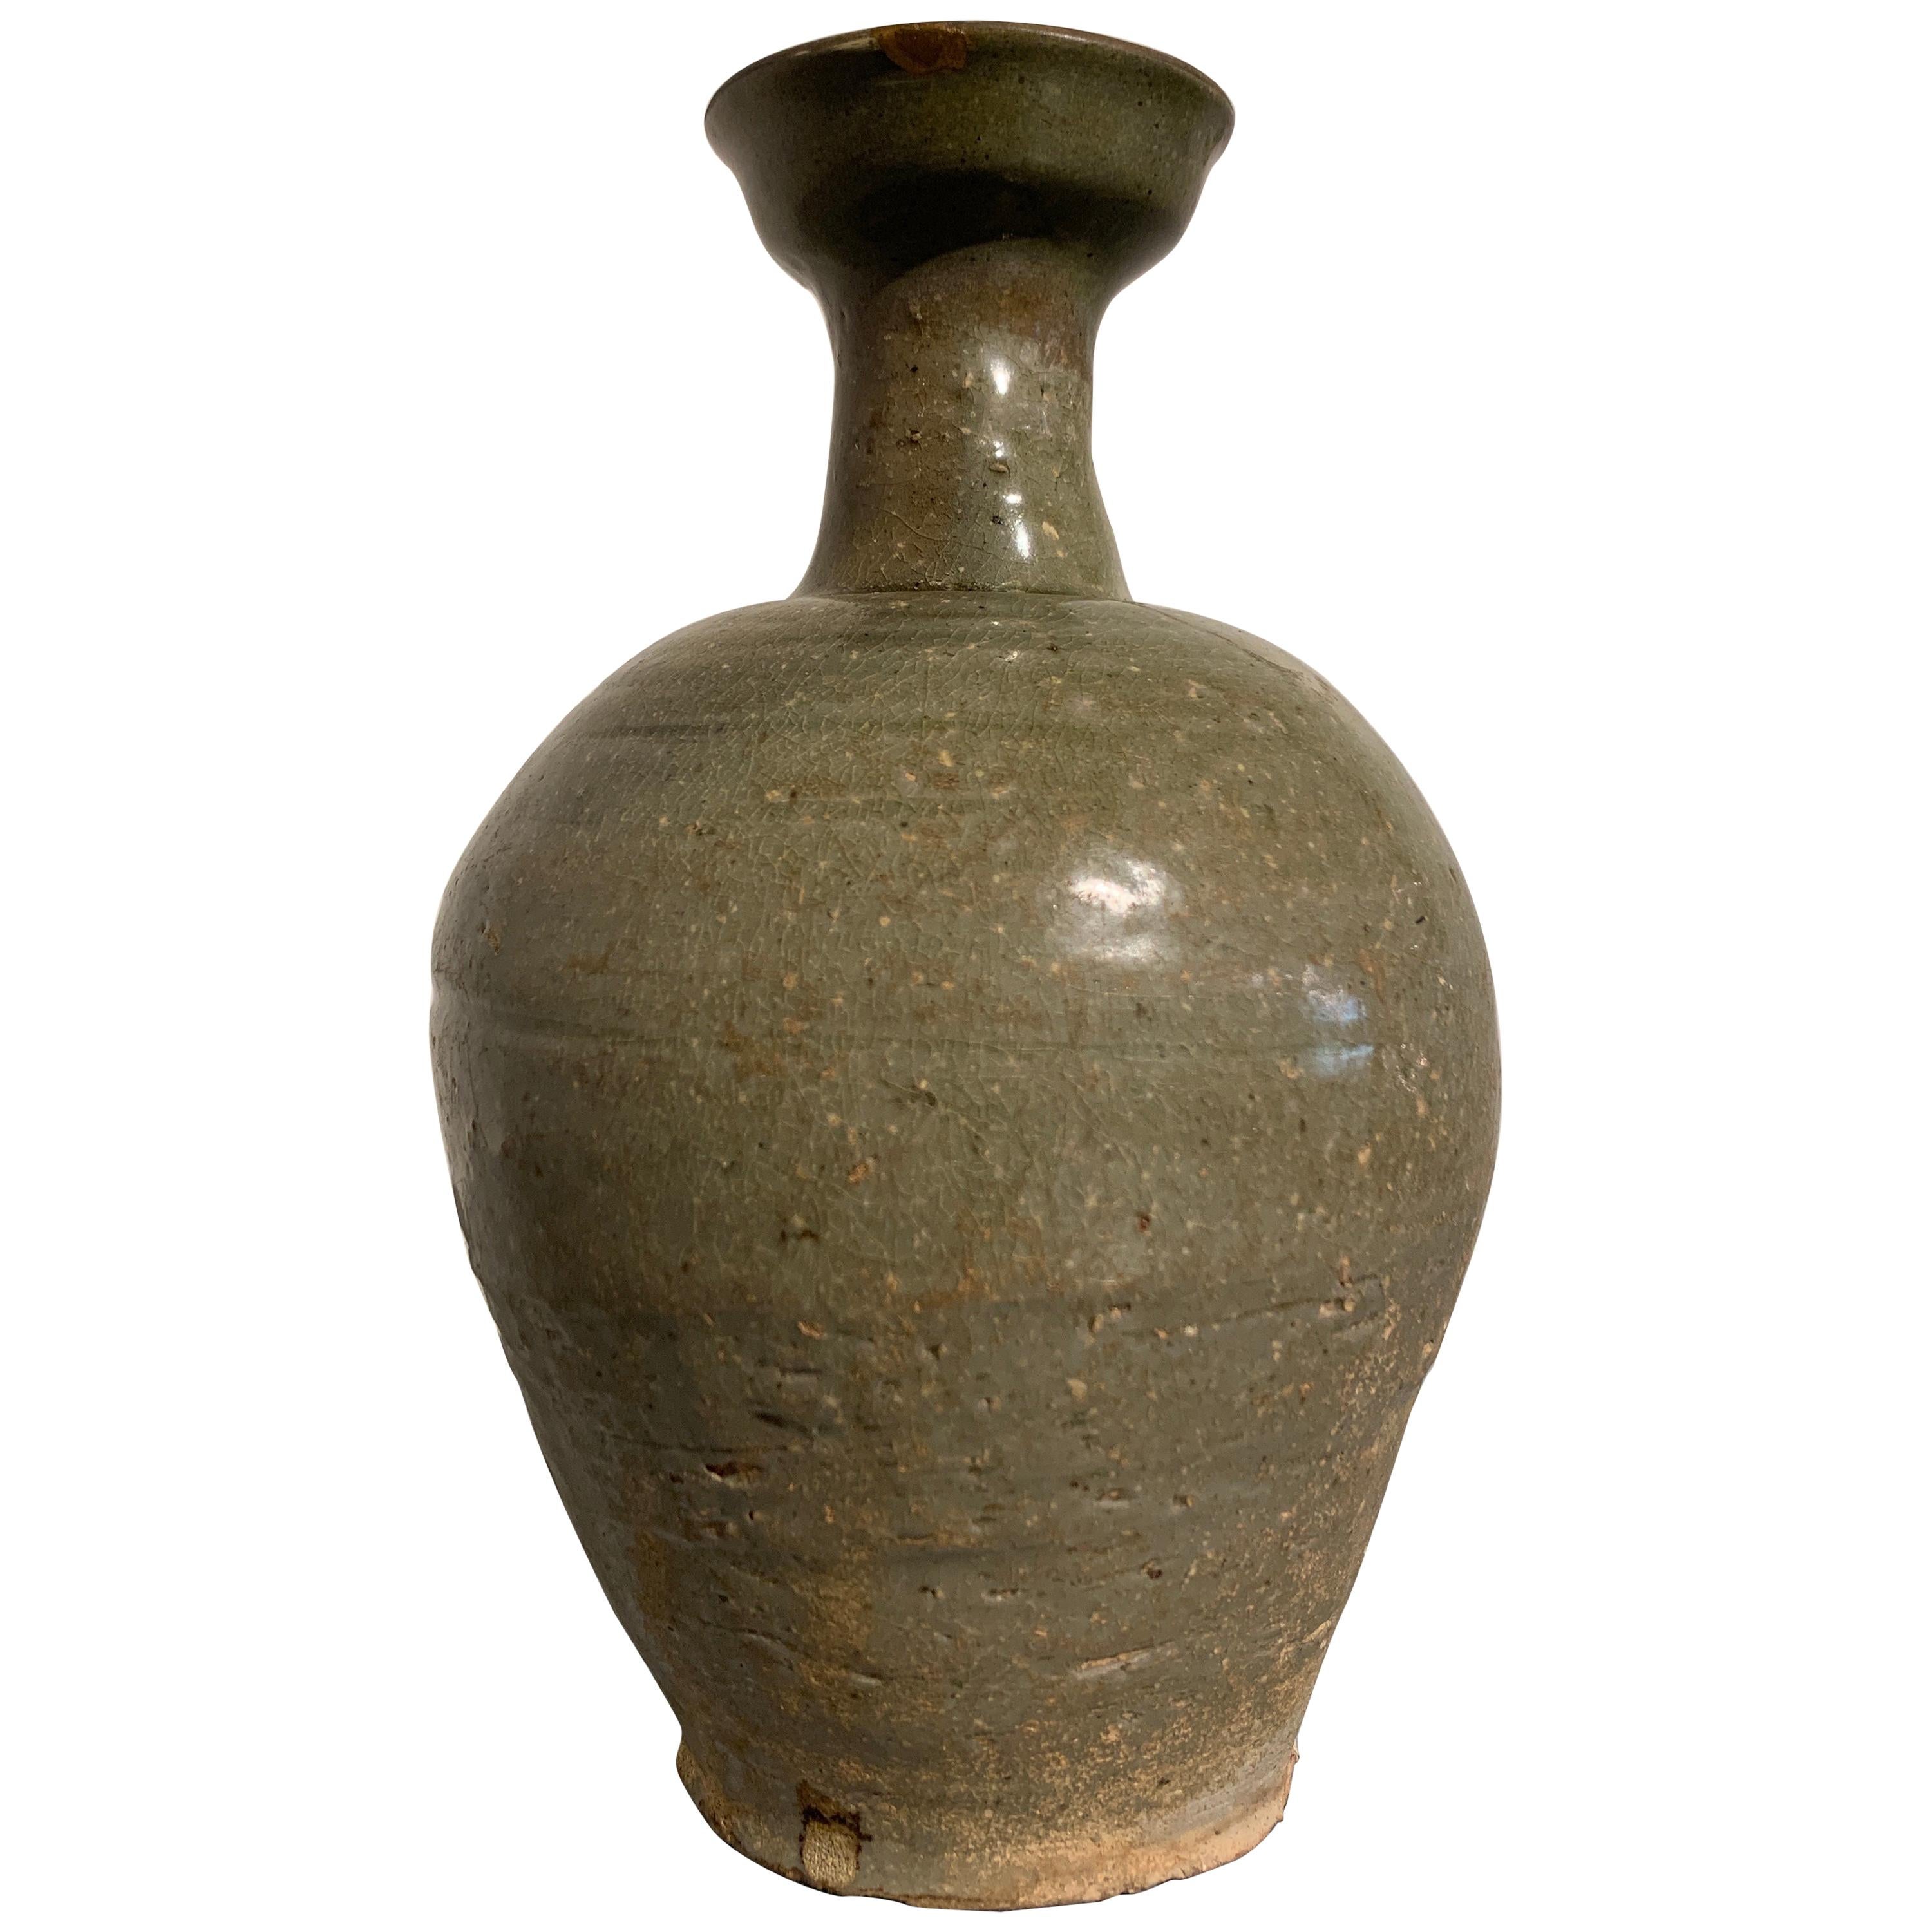 Korean Goryeo Celadon Glazed Bottle Vase with Kintsugi Repair, 12th Century